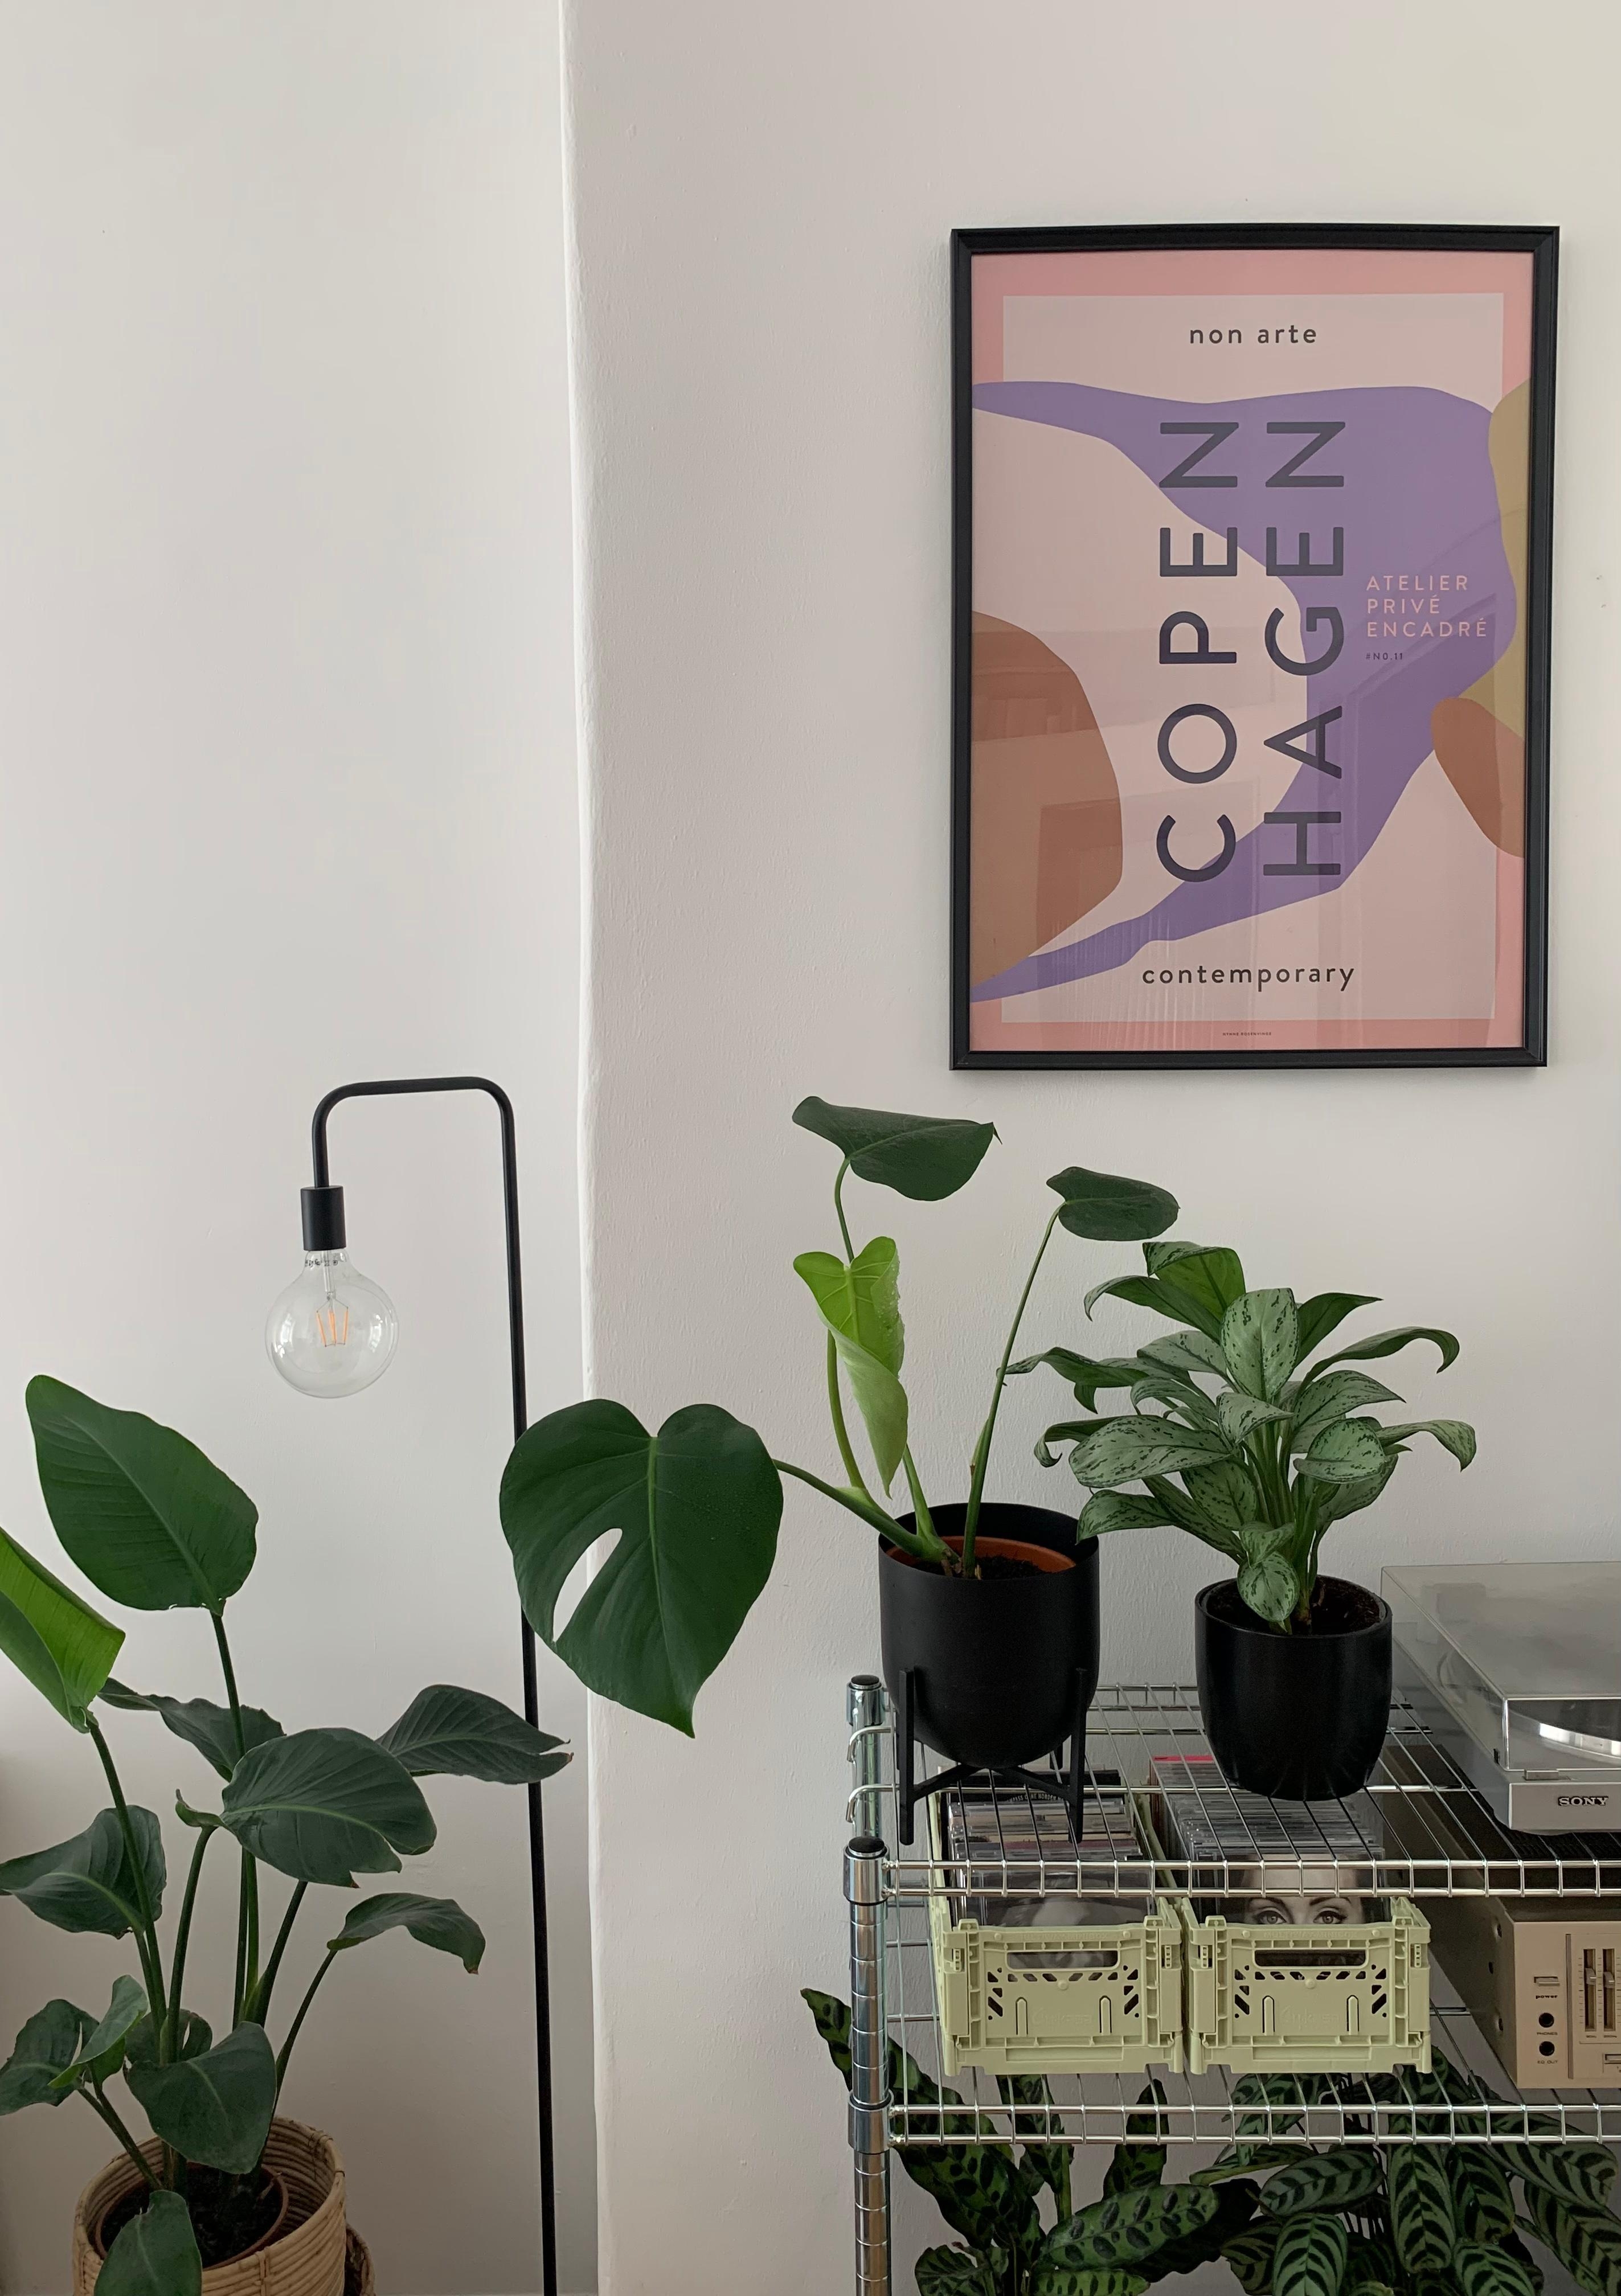 Gewächshaus oder Wohnzimmer? 🪴 #regal #omar #plants #pflanzenliebe #zimmerpflanzen #copenhagen #poster #plattenspieler